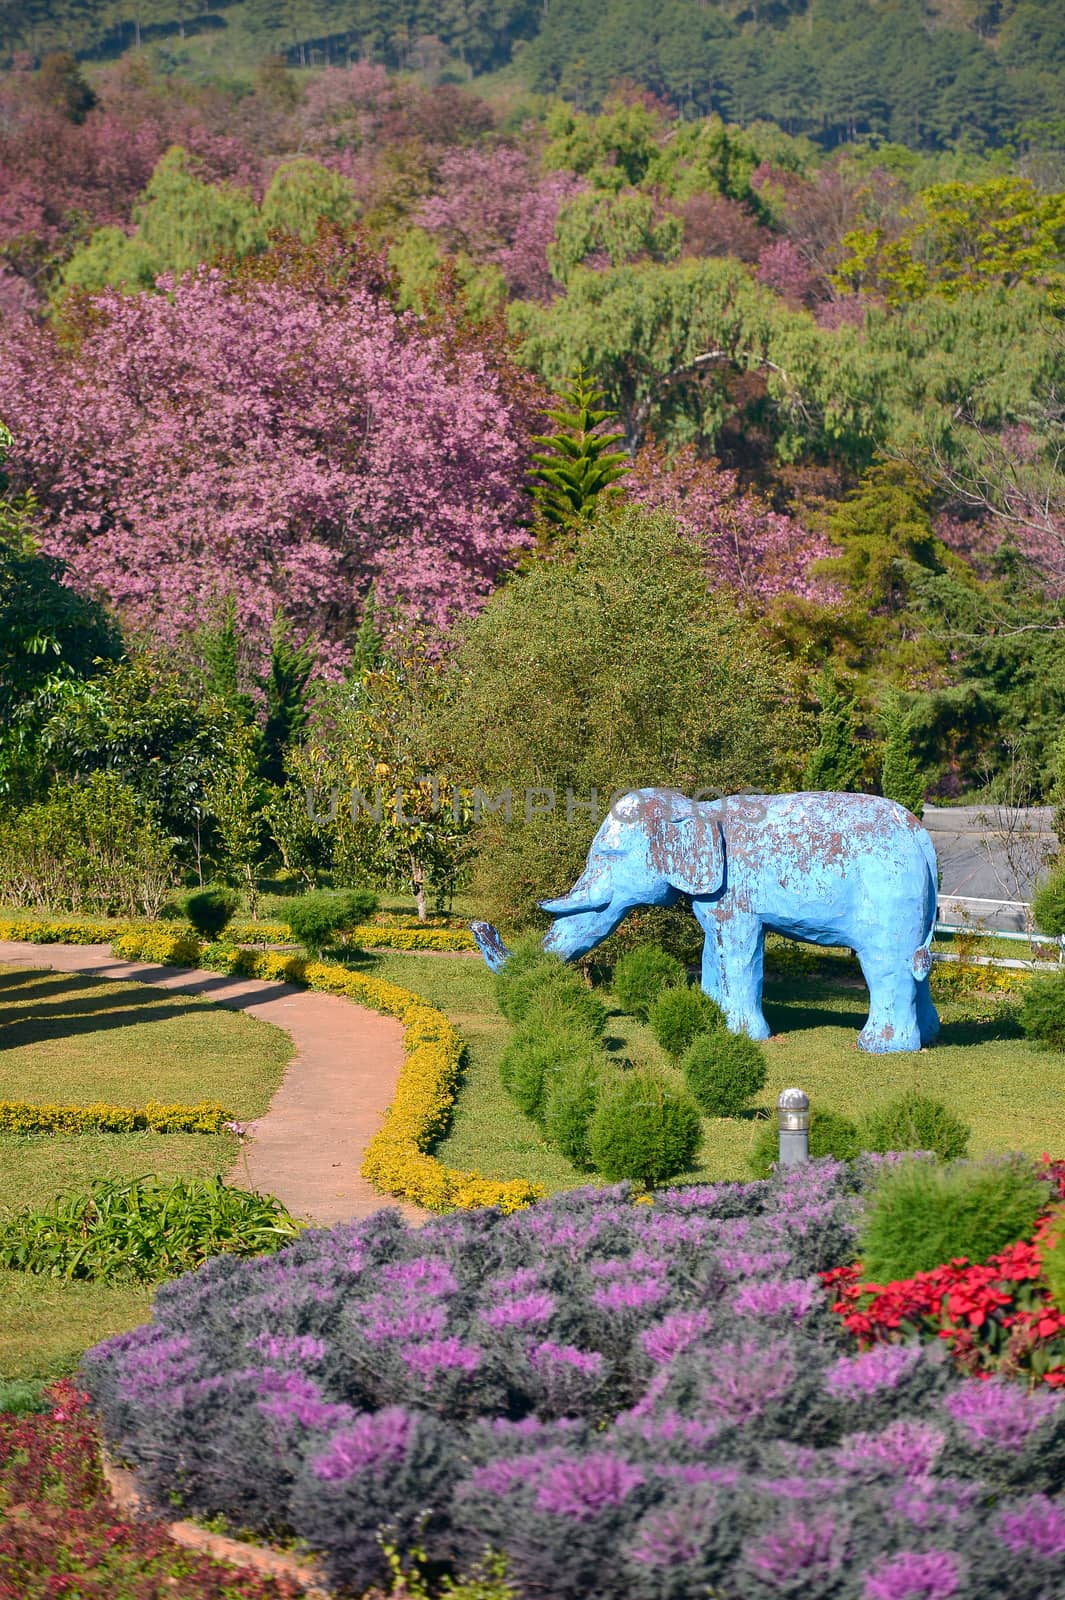 Khun Wang Park in Chiang mai, Thailand.